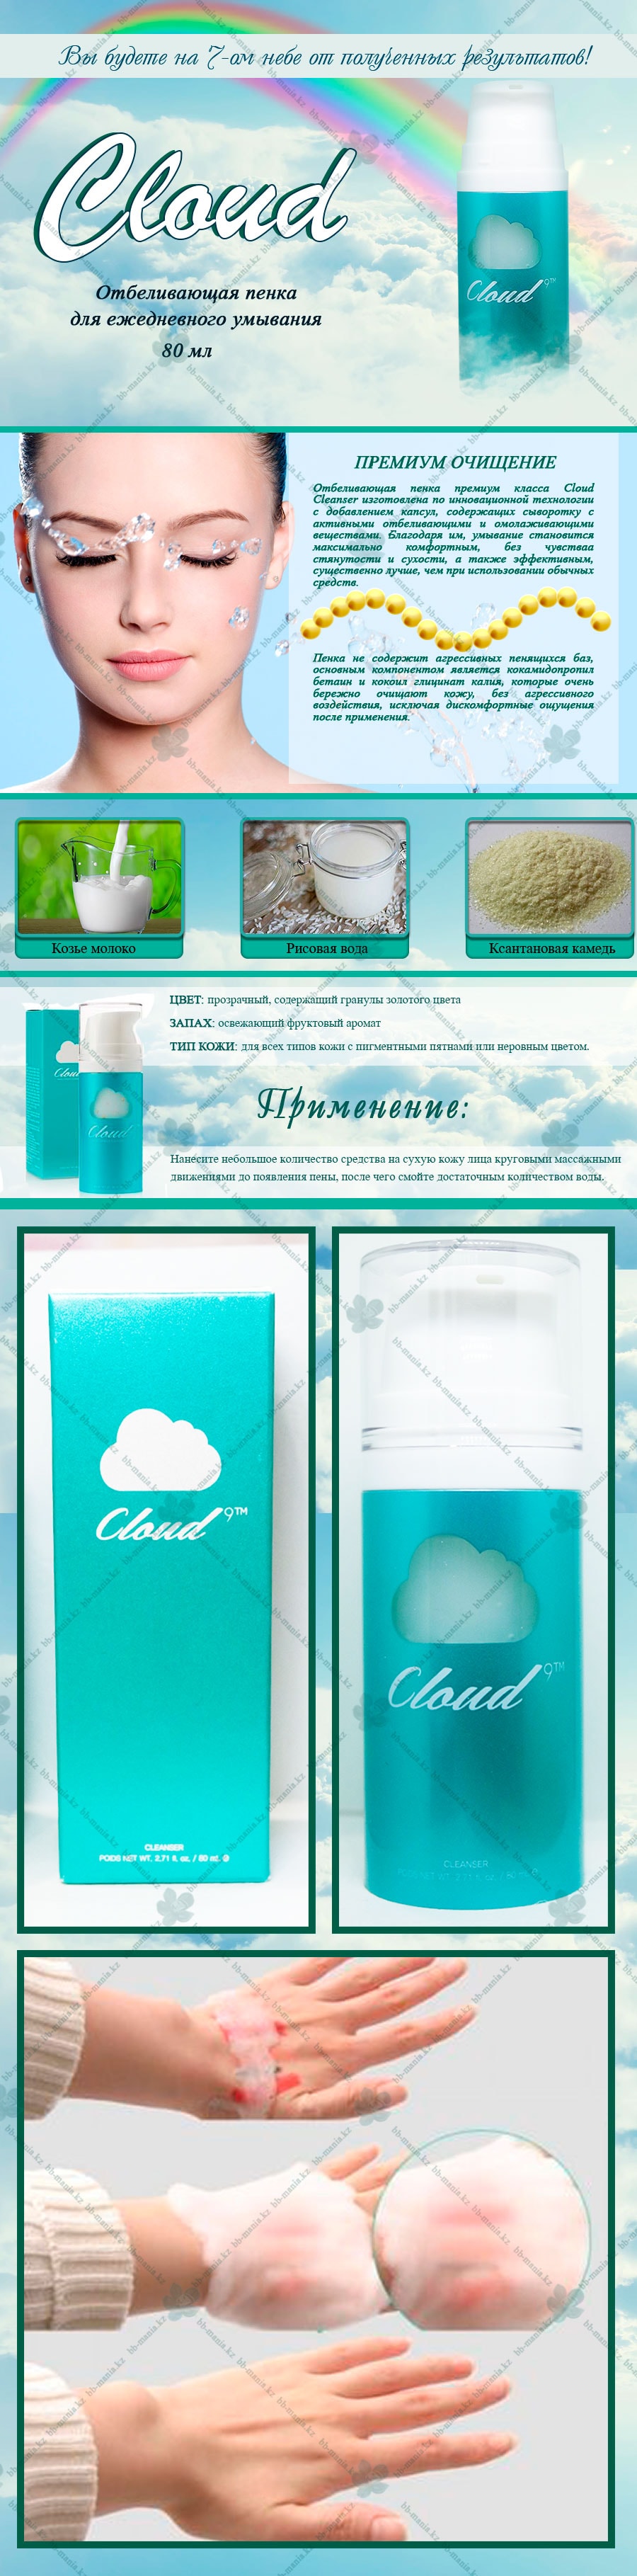 Cloud-9TM-Cleanser-[Claire's-Korea]-min